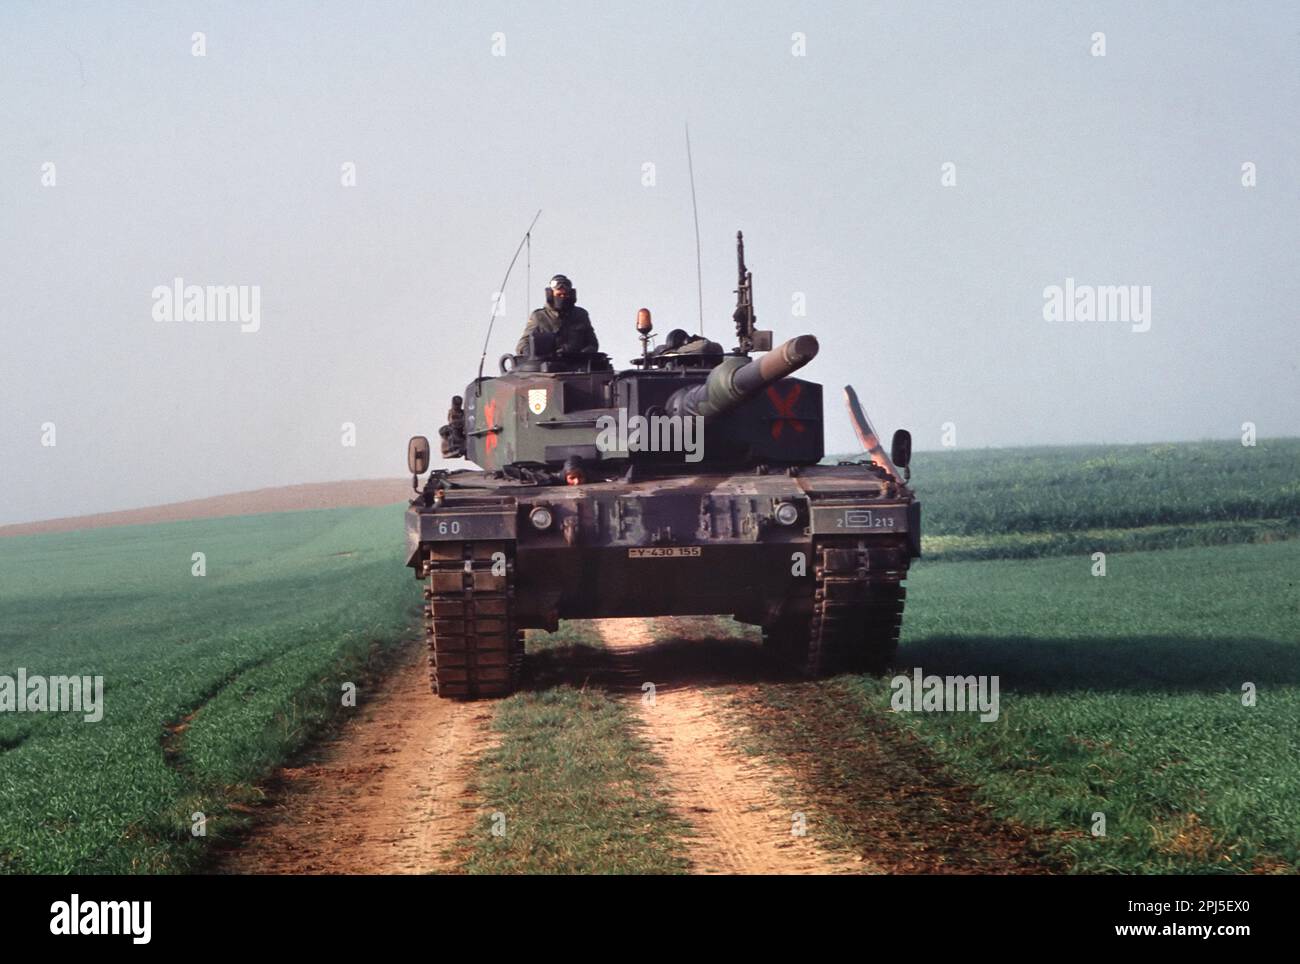 Panzer der deutschen Armee Leopard 2 während NATO-Übungen in Deutschland - Carro armato Leopard 2 dell'Esercito Tedesco durante esercitazioni NATO in Germanien Stockfoto